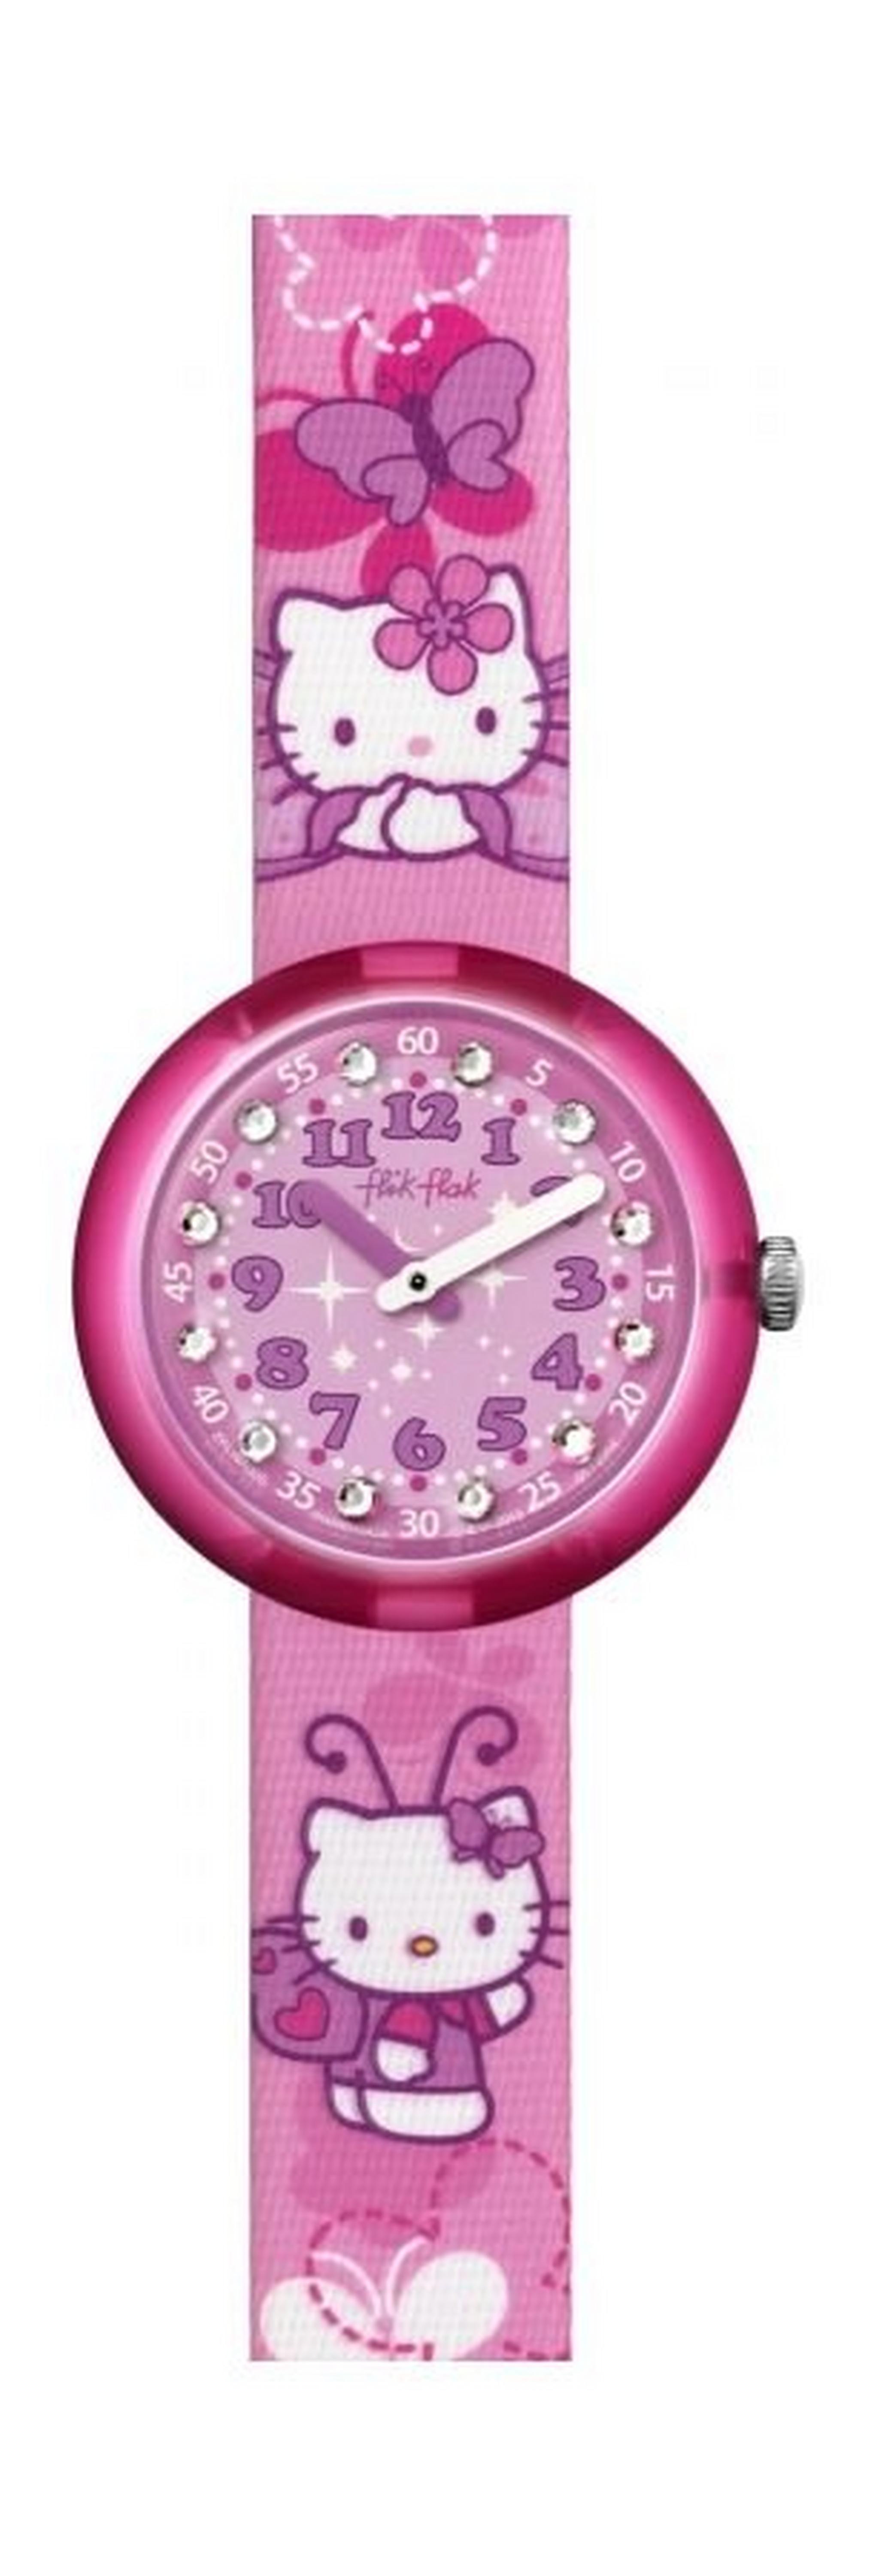 Flik Flak Hello Kitty Butterfly Kids Wrist Watch (FLNP005 ) - Pink